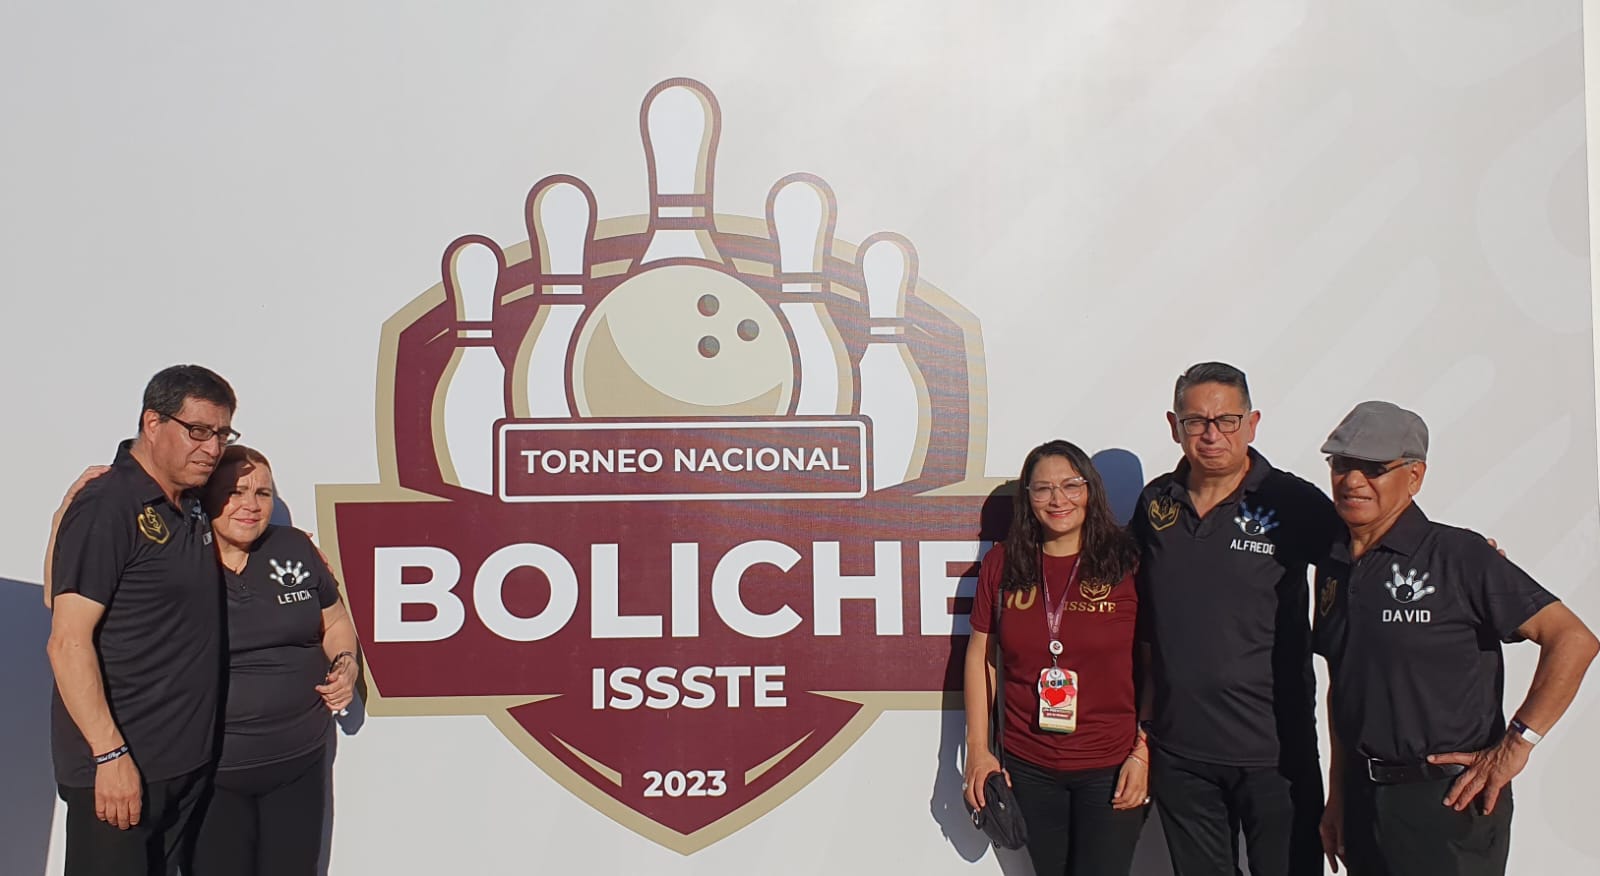 Comienza Torneo Nacional de Boliche Issste 2023 en Campeche